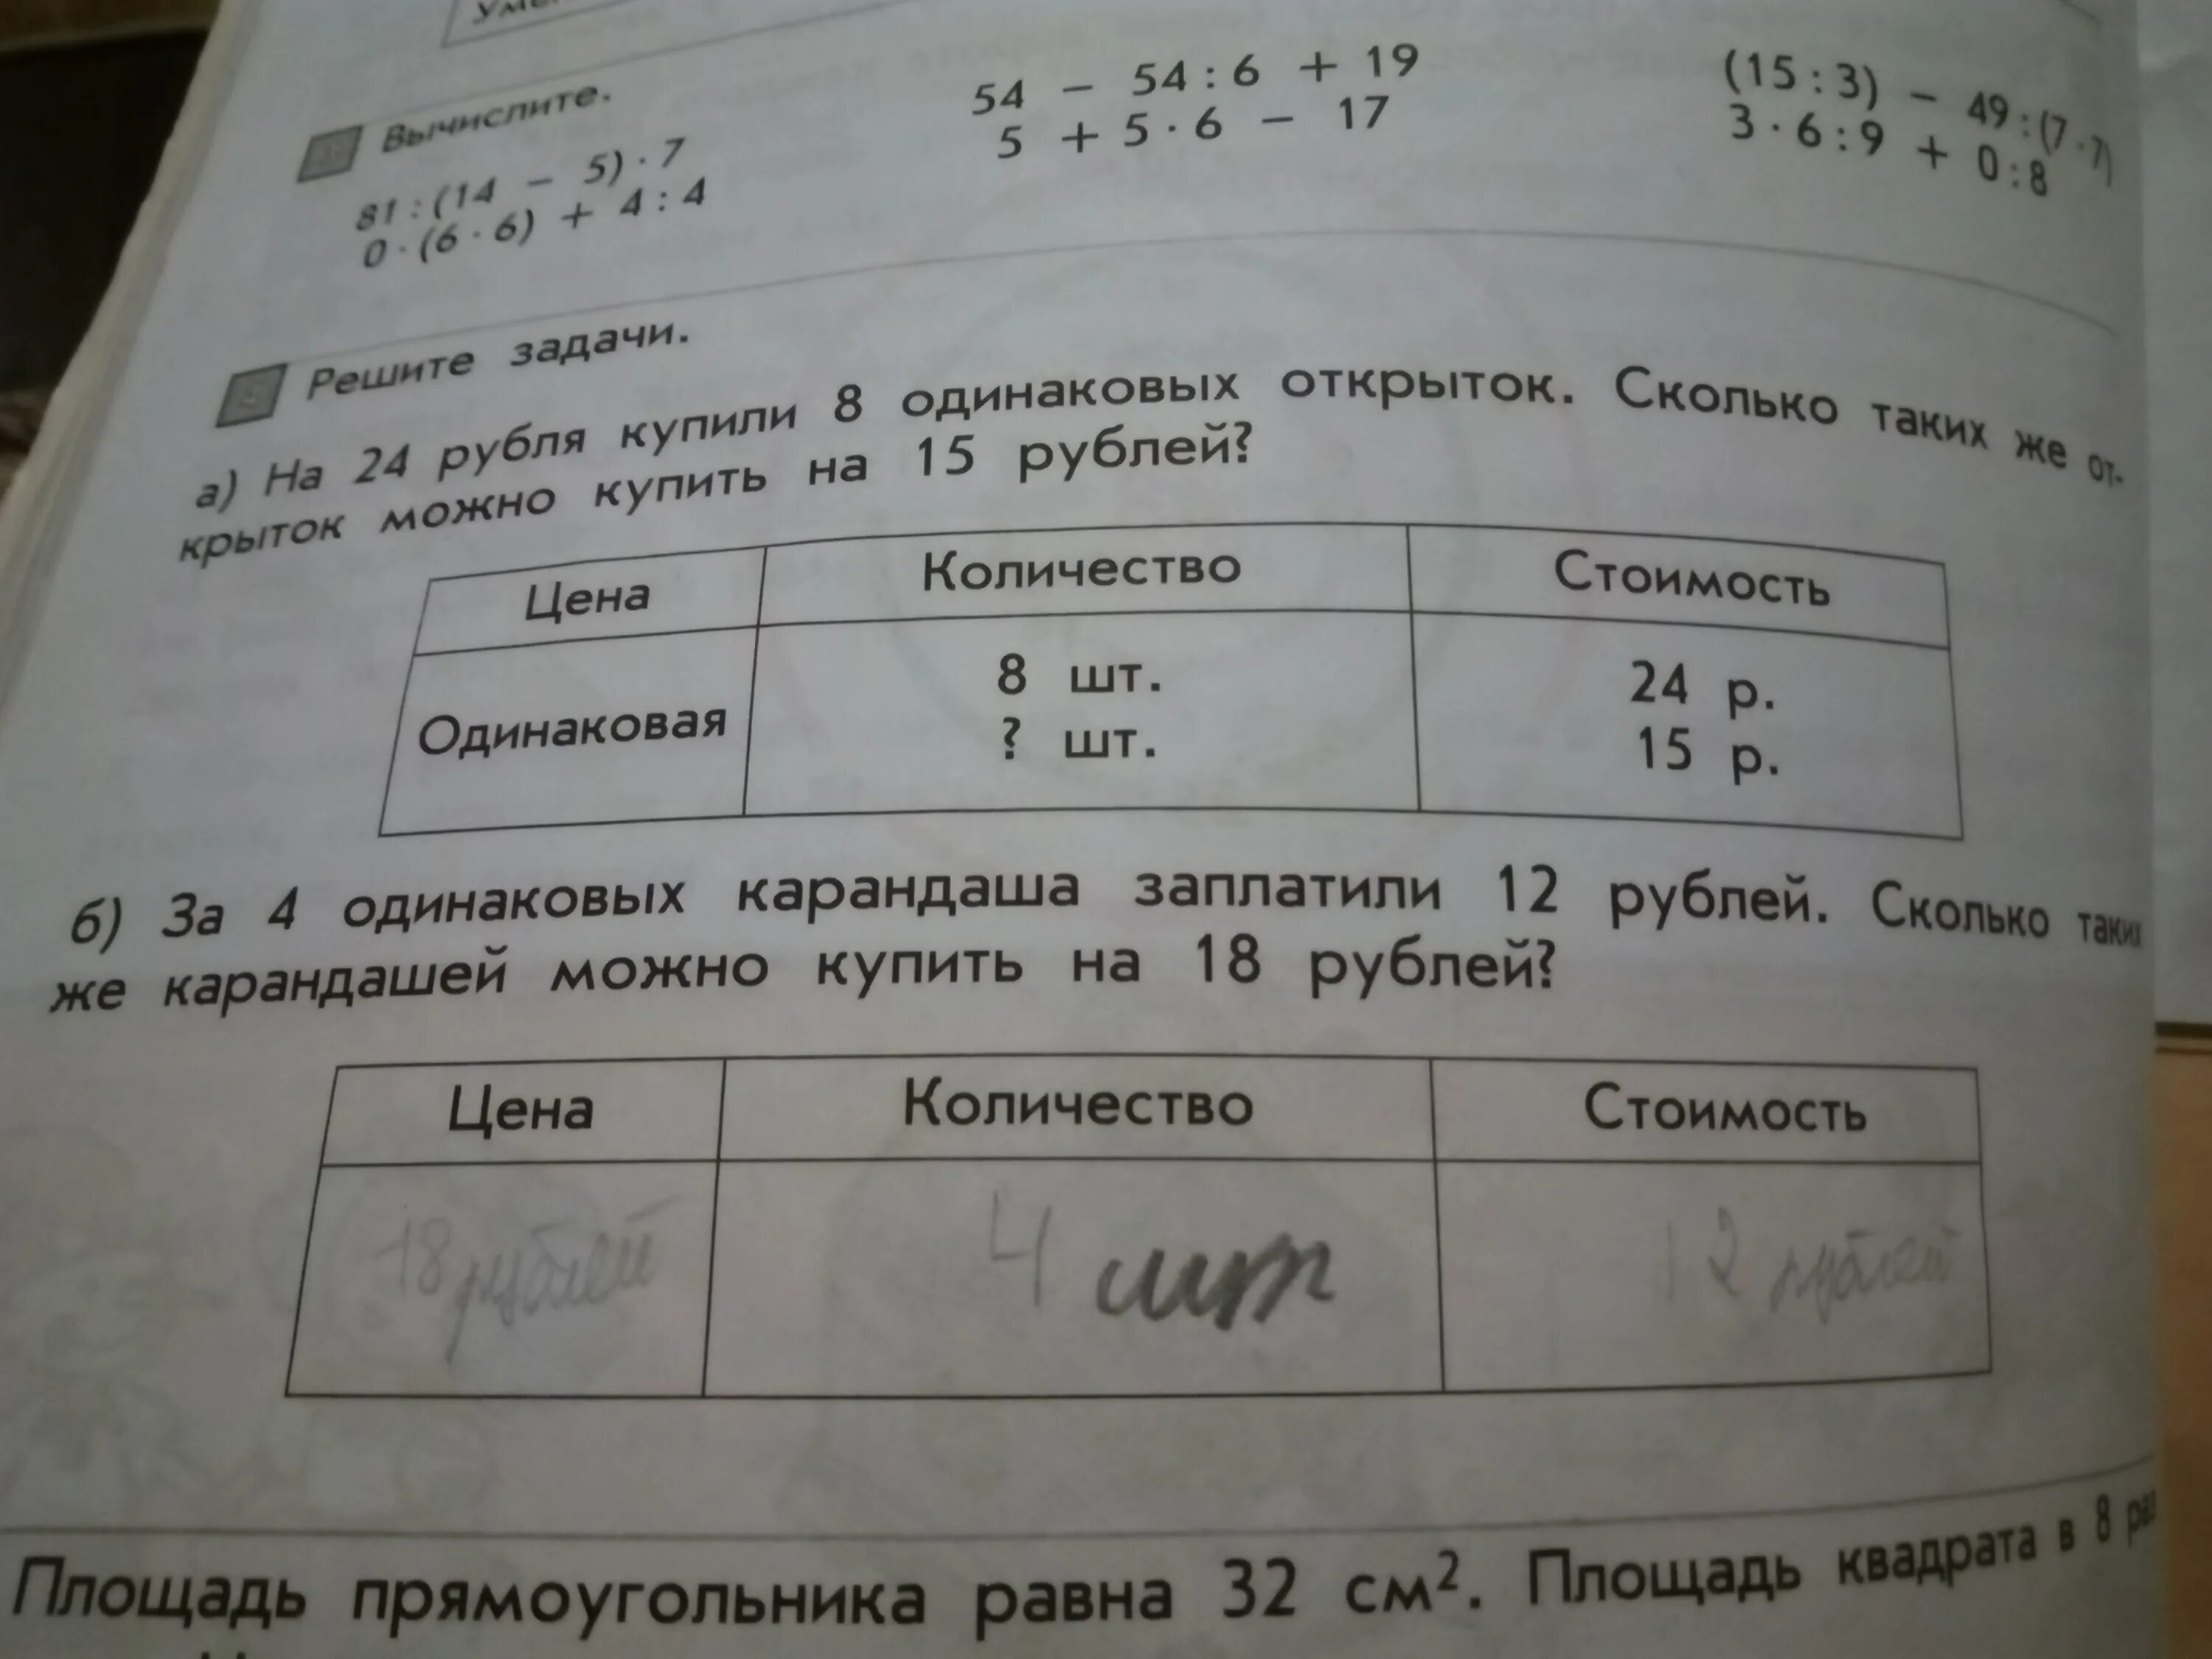 Такую задачу как купить. Условия задачи 8 карандашей. Соедини условия задач с их вопросами.. Решение задачи 8 карандашей стоят 24 рубля. Задача про рубль.